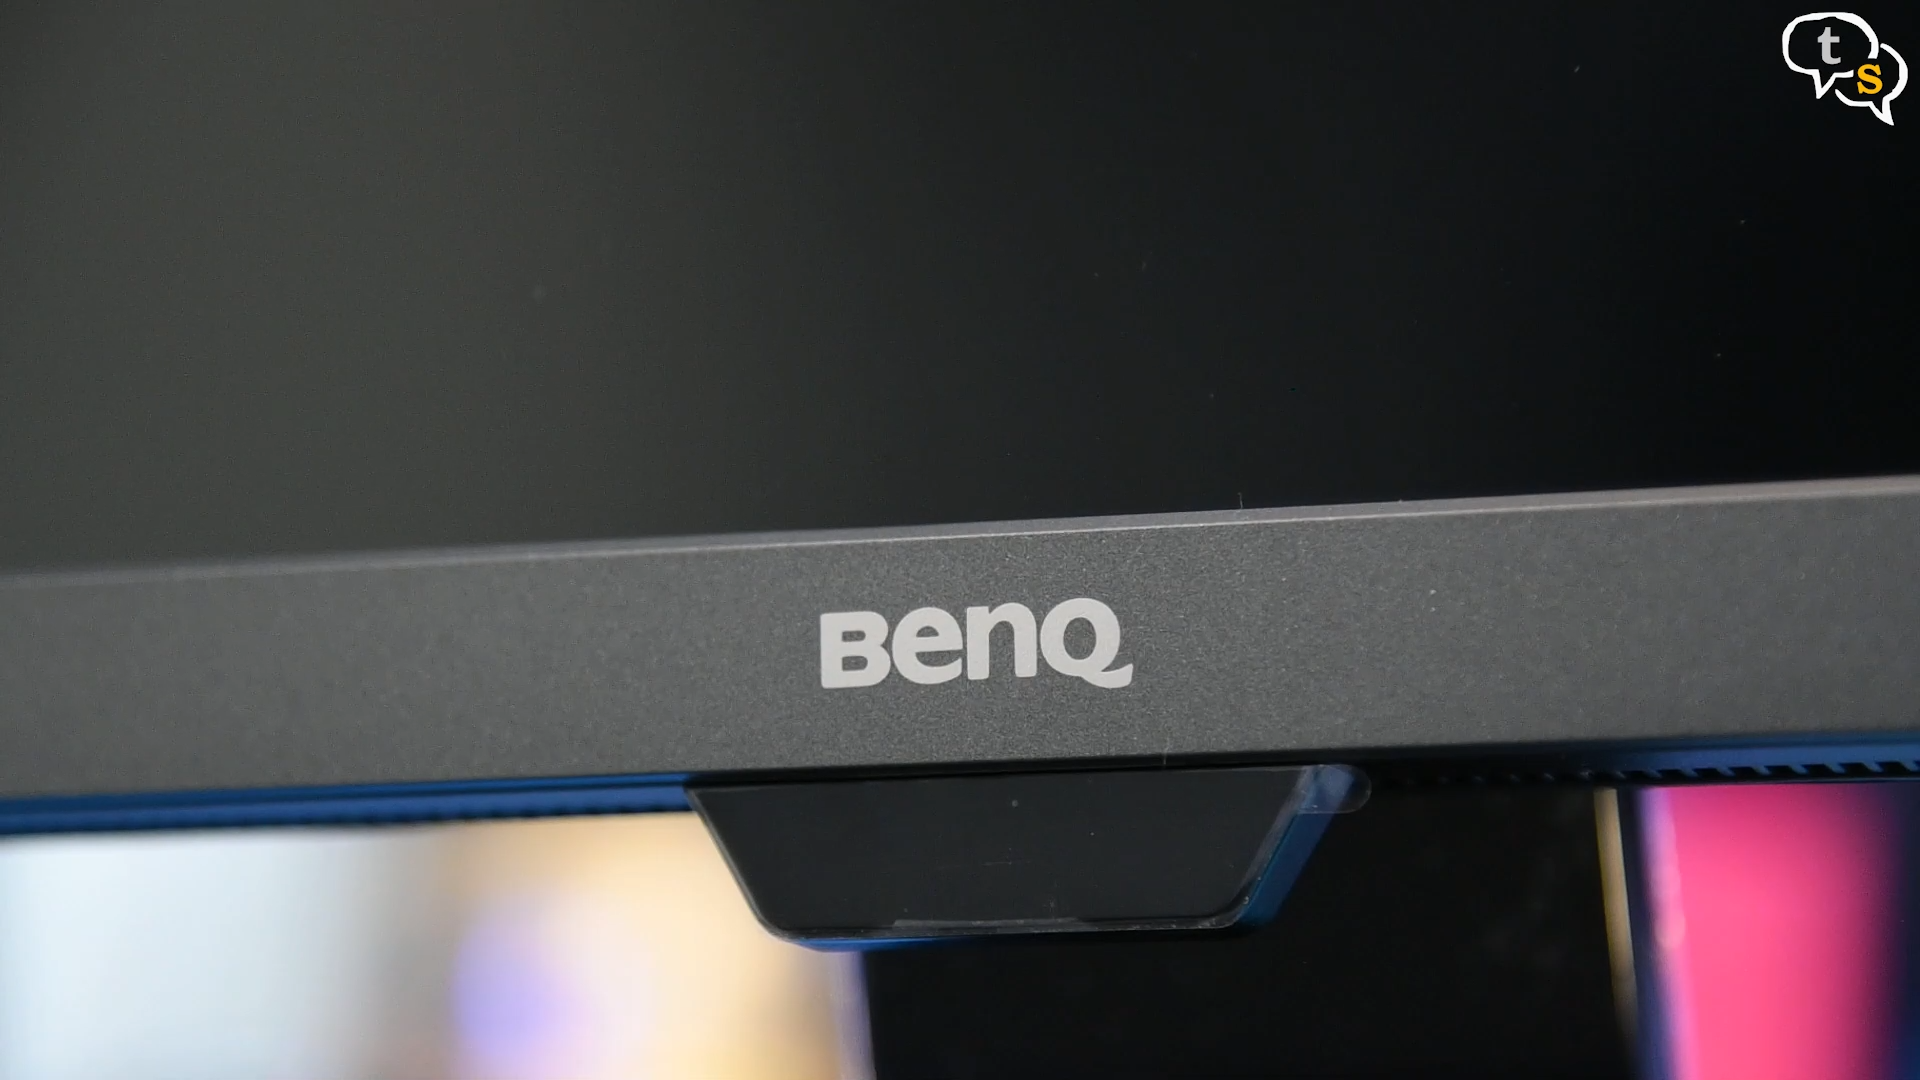 BenQ EW3270U 4K HDR monitor ambient light sensor